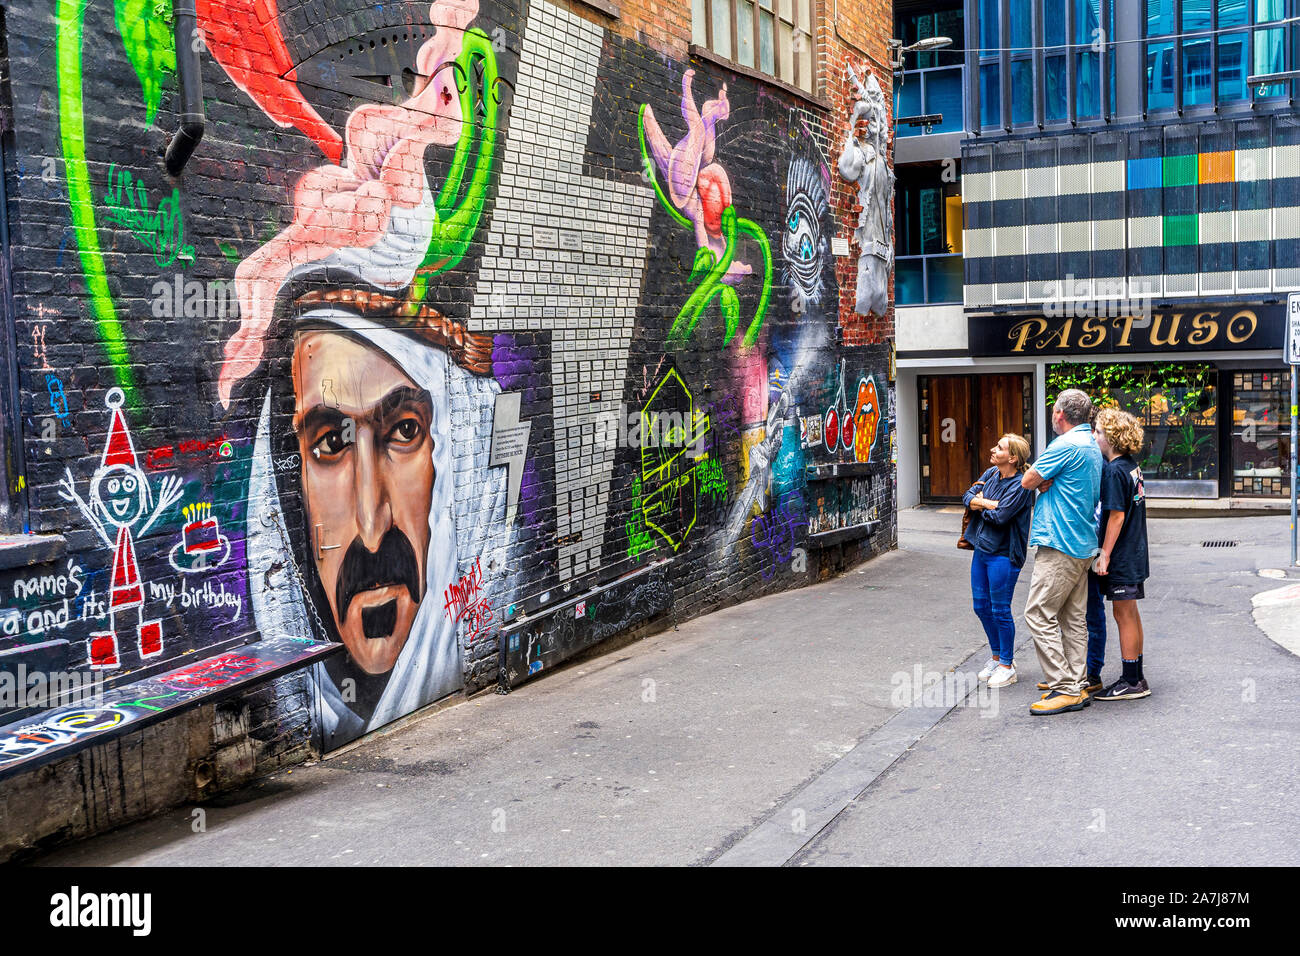 AC/DC Lane ist ein berühmter Ort für Street Art in der Stadt  Melbourne.Melbourne, Australien Stockfotografie - Alamy